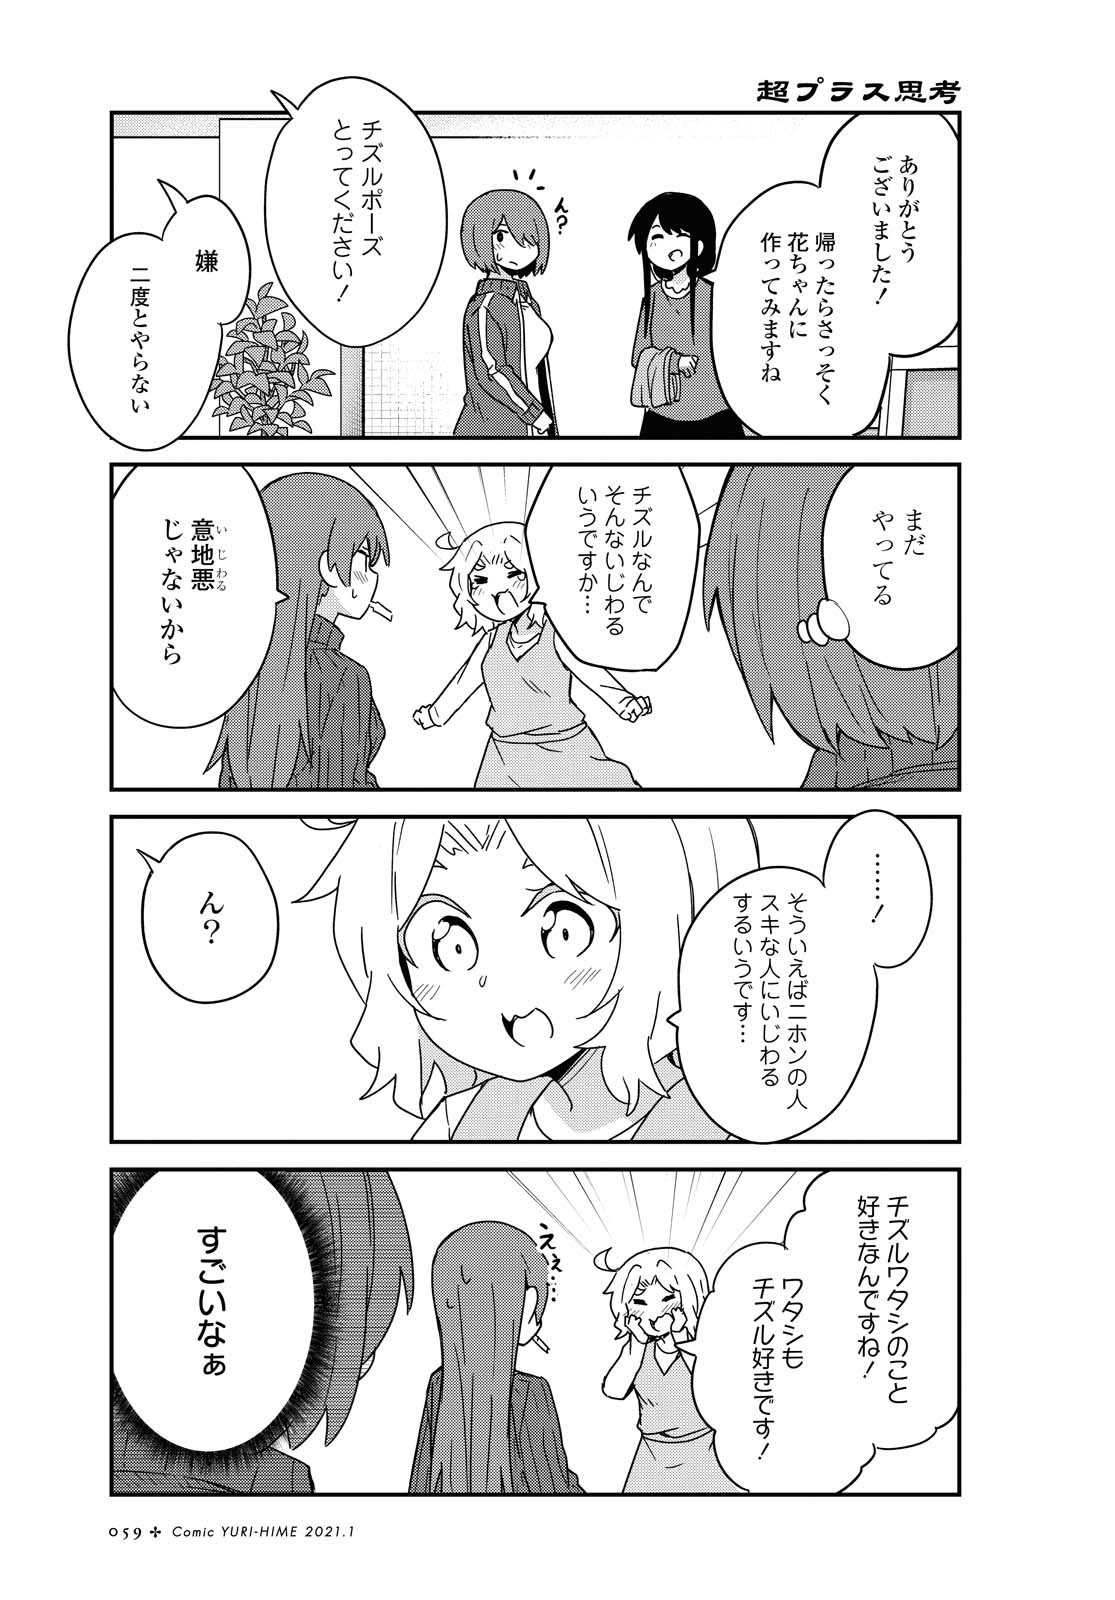 Watashi ni Tenshi ga Maiorita! - Chapter 75 - Page 9